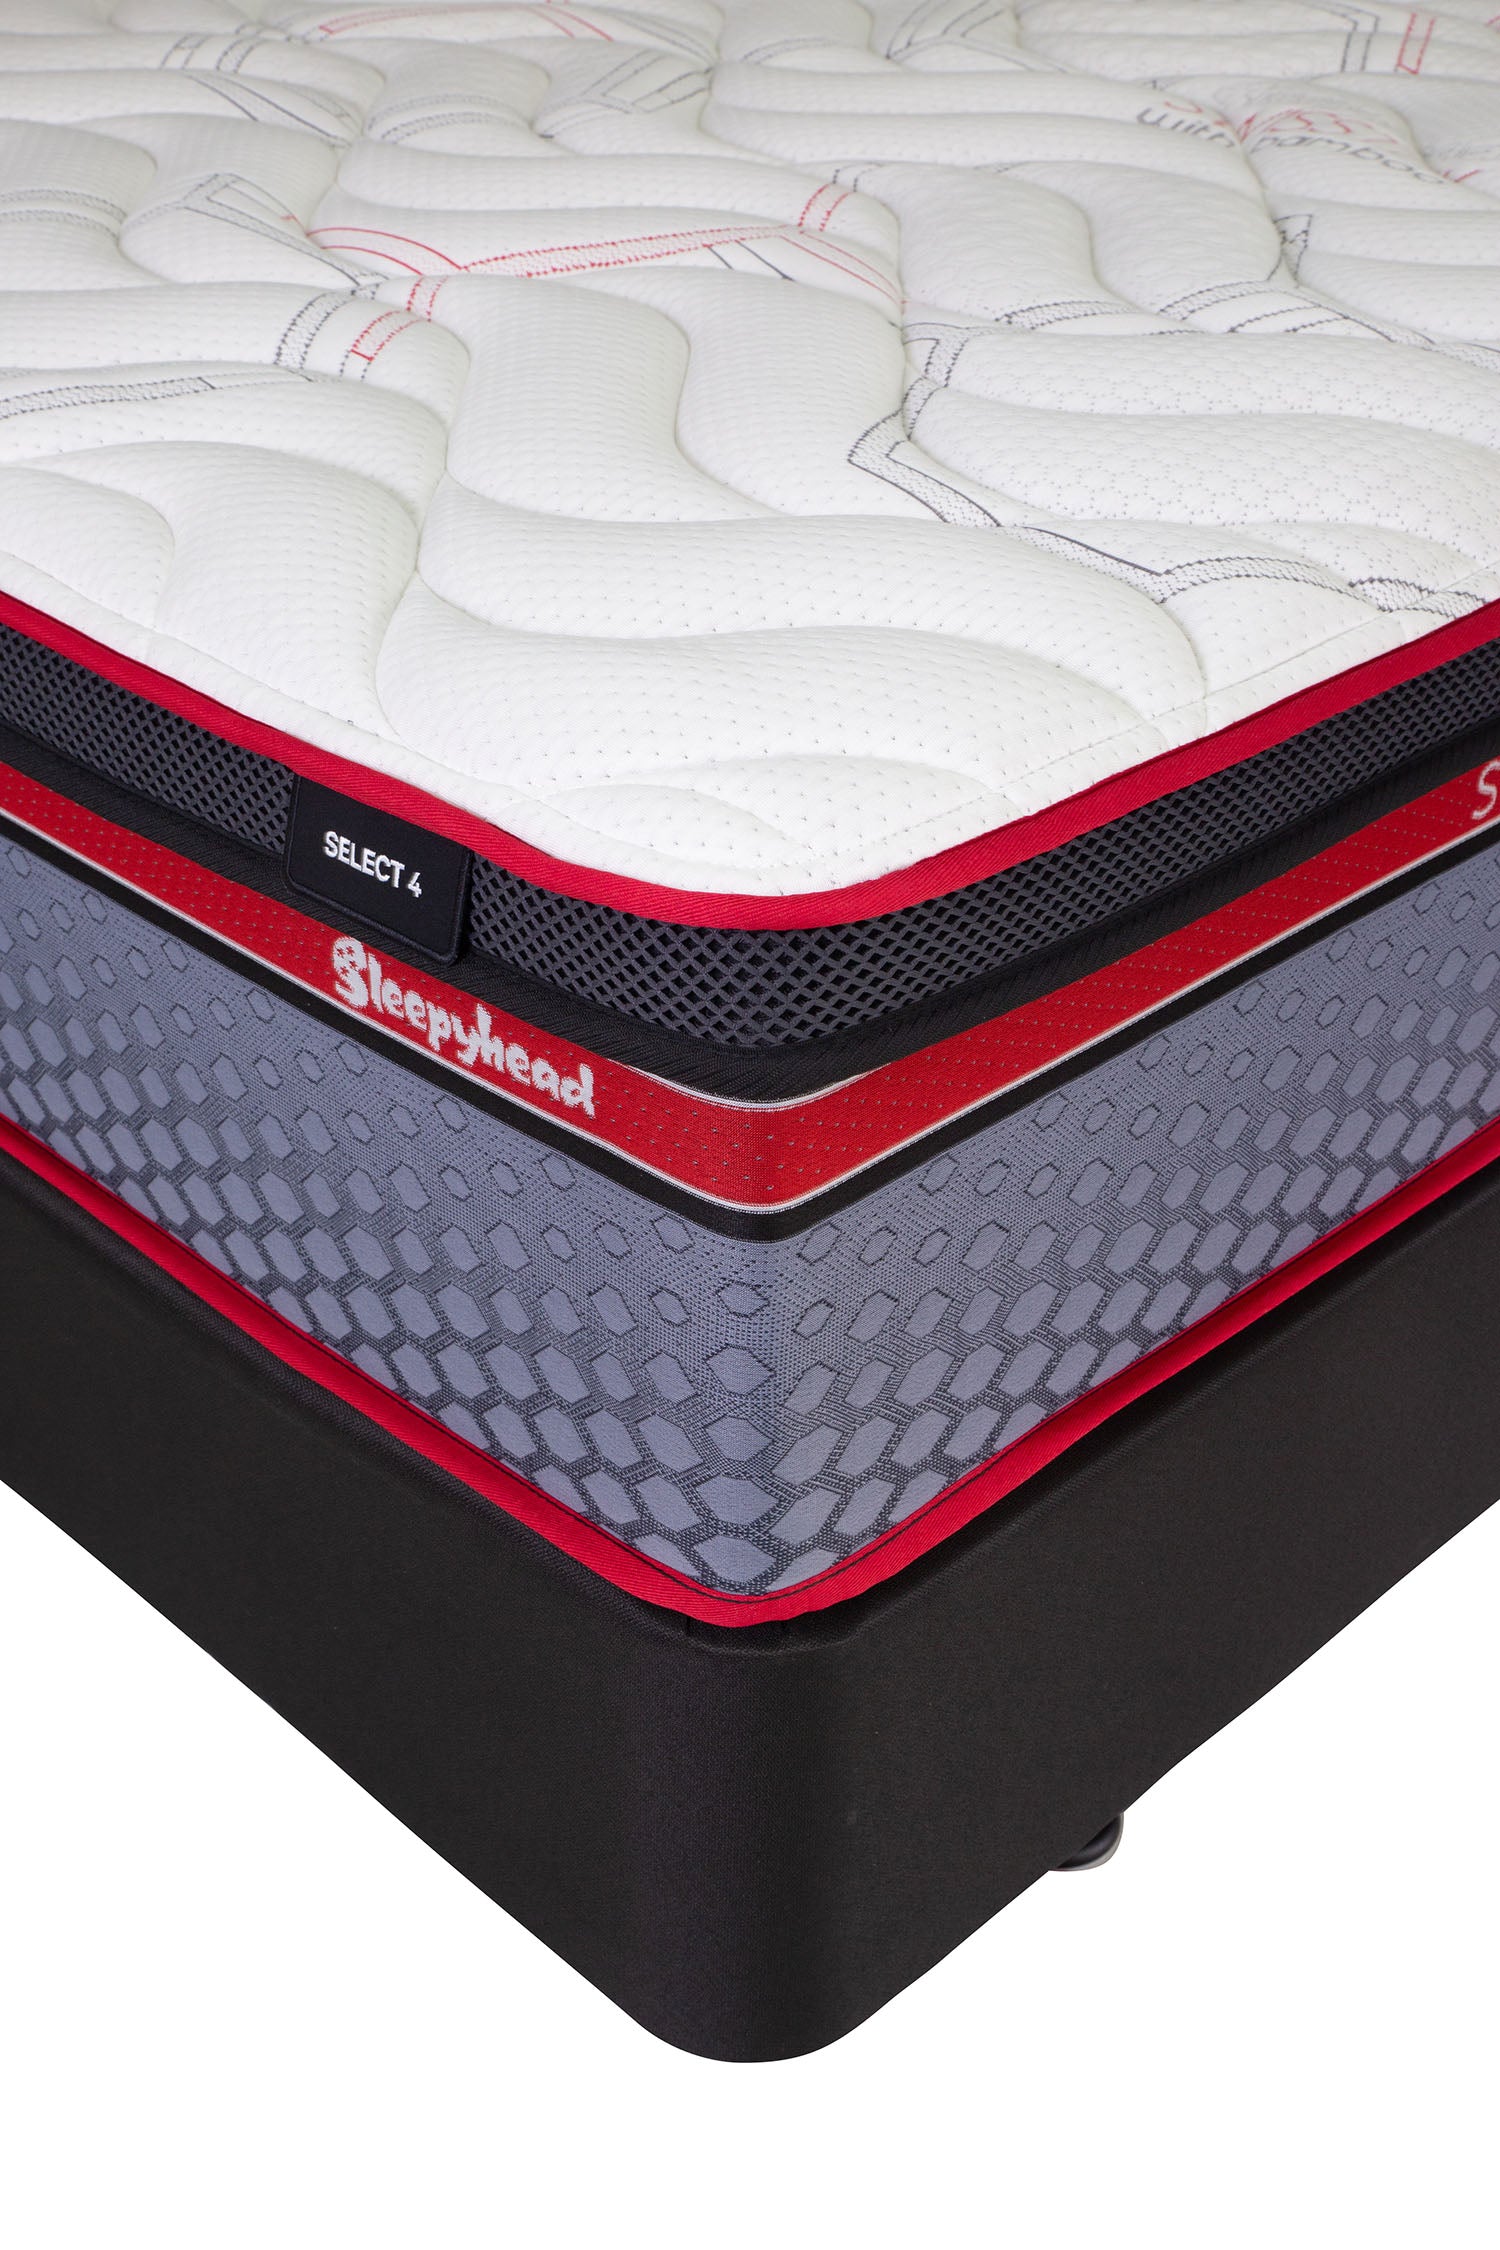 select4-long-single-mattress-3